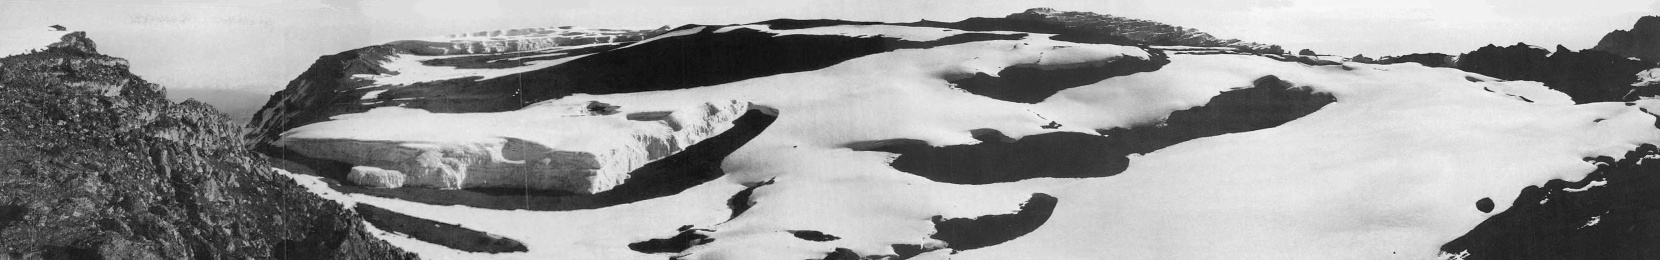 Der Furtwängler Gletscher in der Kibo-Kaldera im August 1973.Aufnahmestandpunkt am Uhuru Peak ( 5.895 m.a.S.L. ) mit Blick von Nord-West ( Kibo-Kaldera mit Furtwängler Gletscher) nach Osten (Mawenzi) - © Stefan Hastenrath [6]